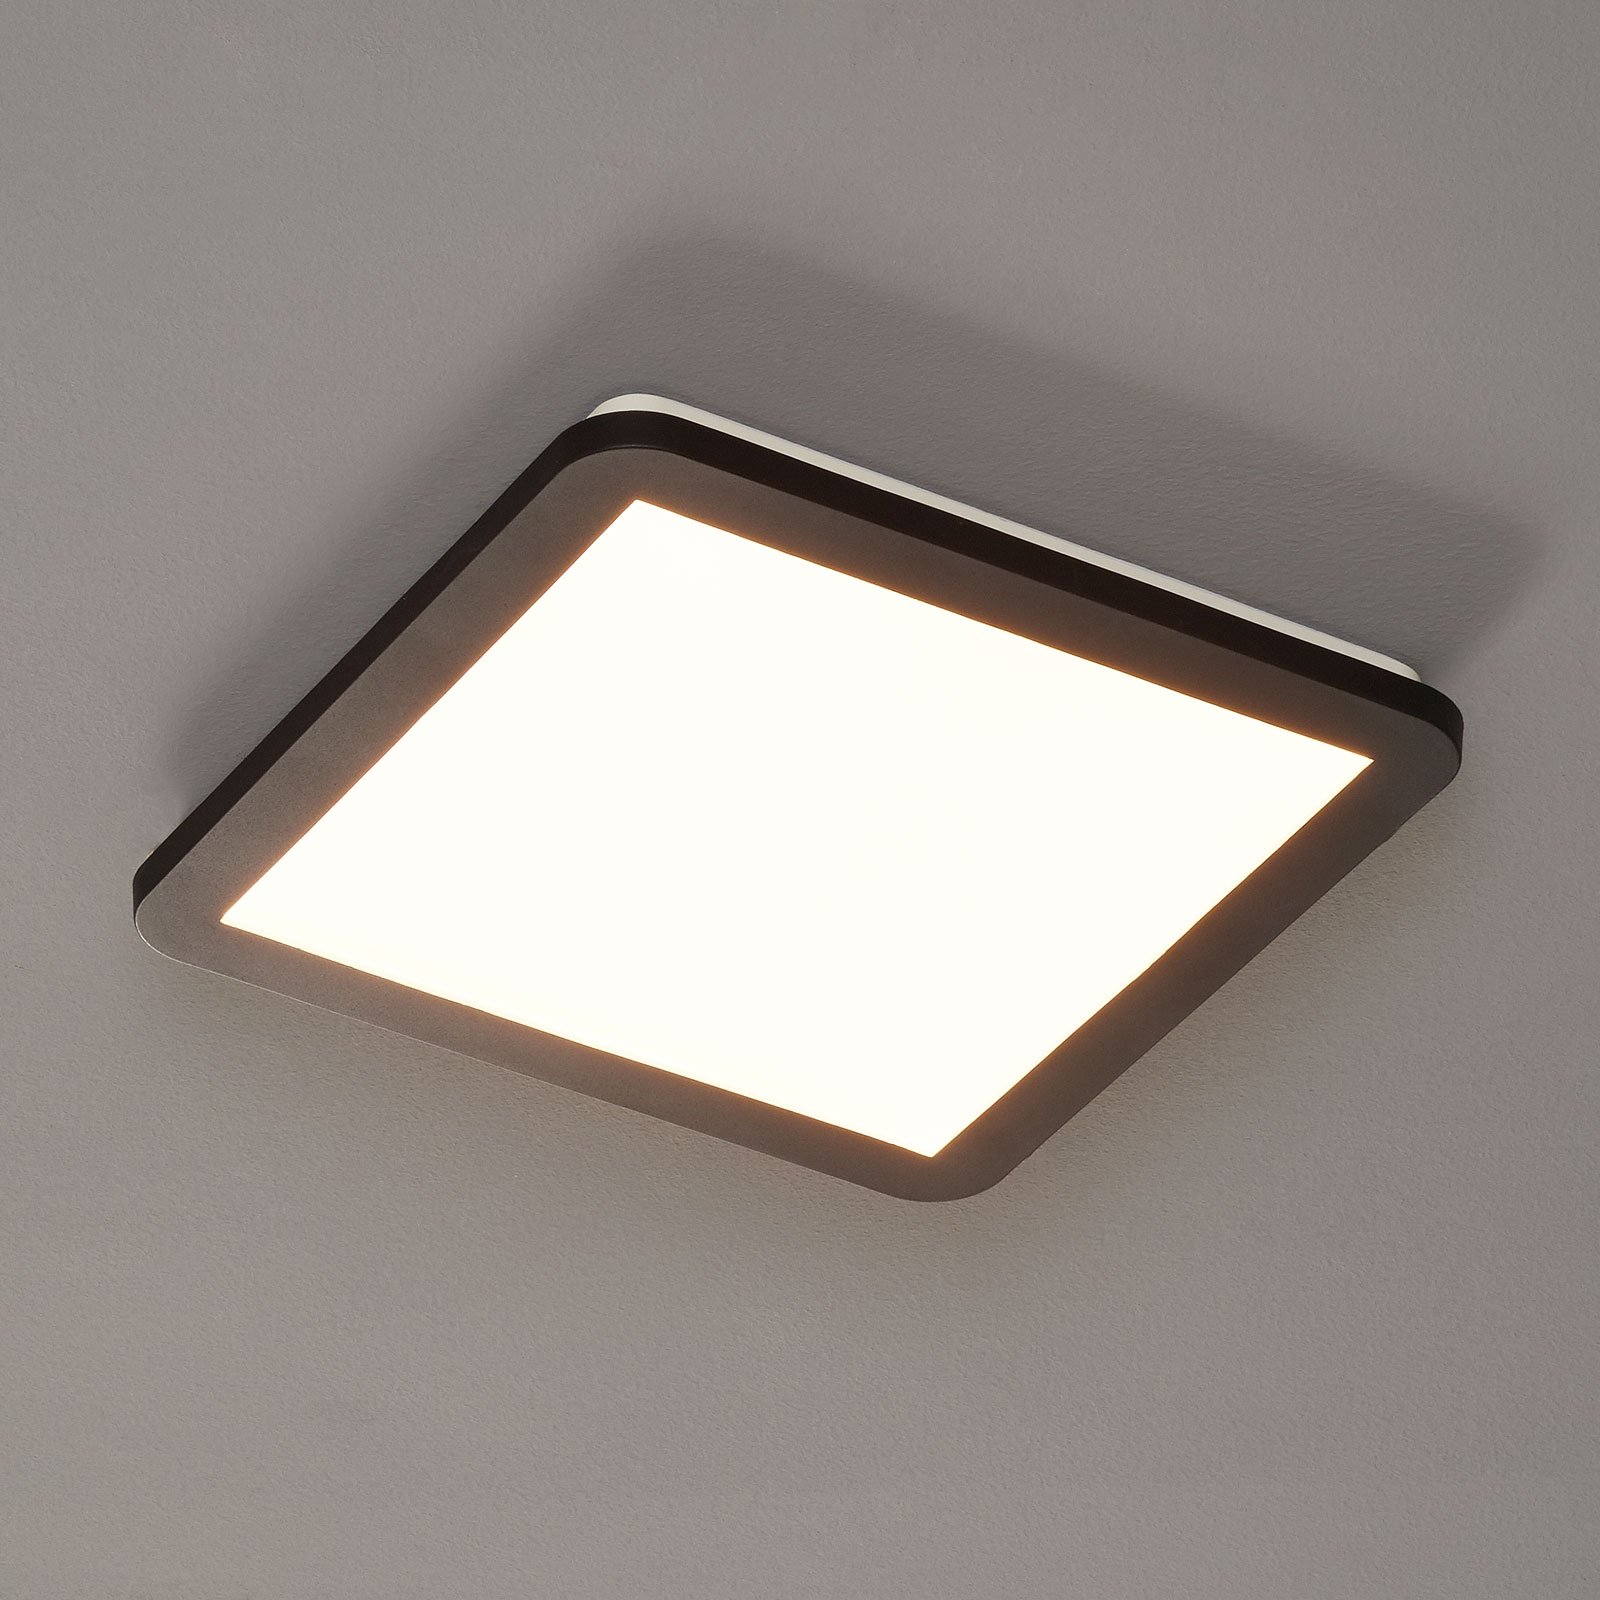 Camillus LED ceiling light, square, 30 cm